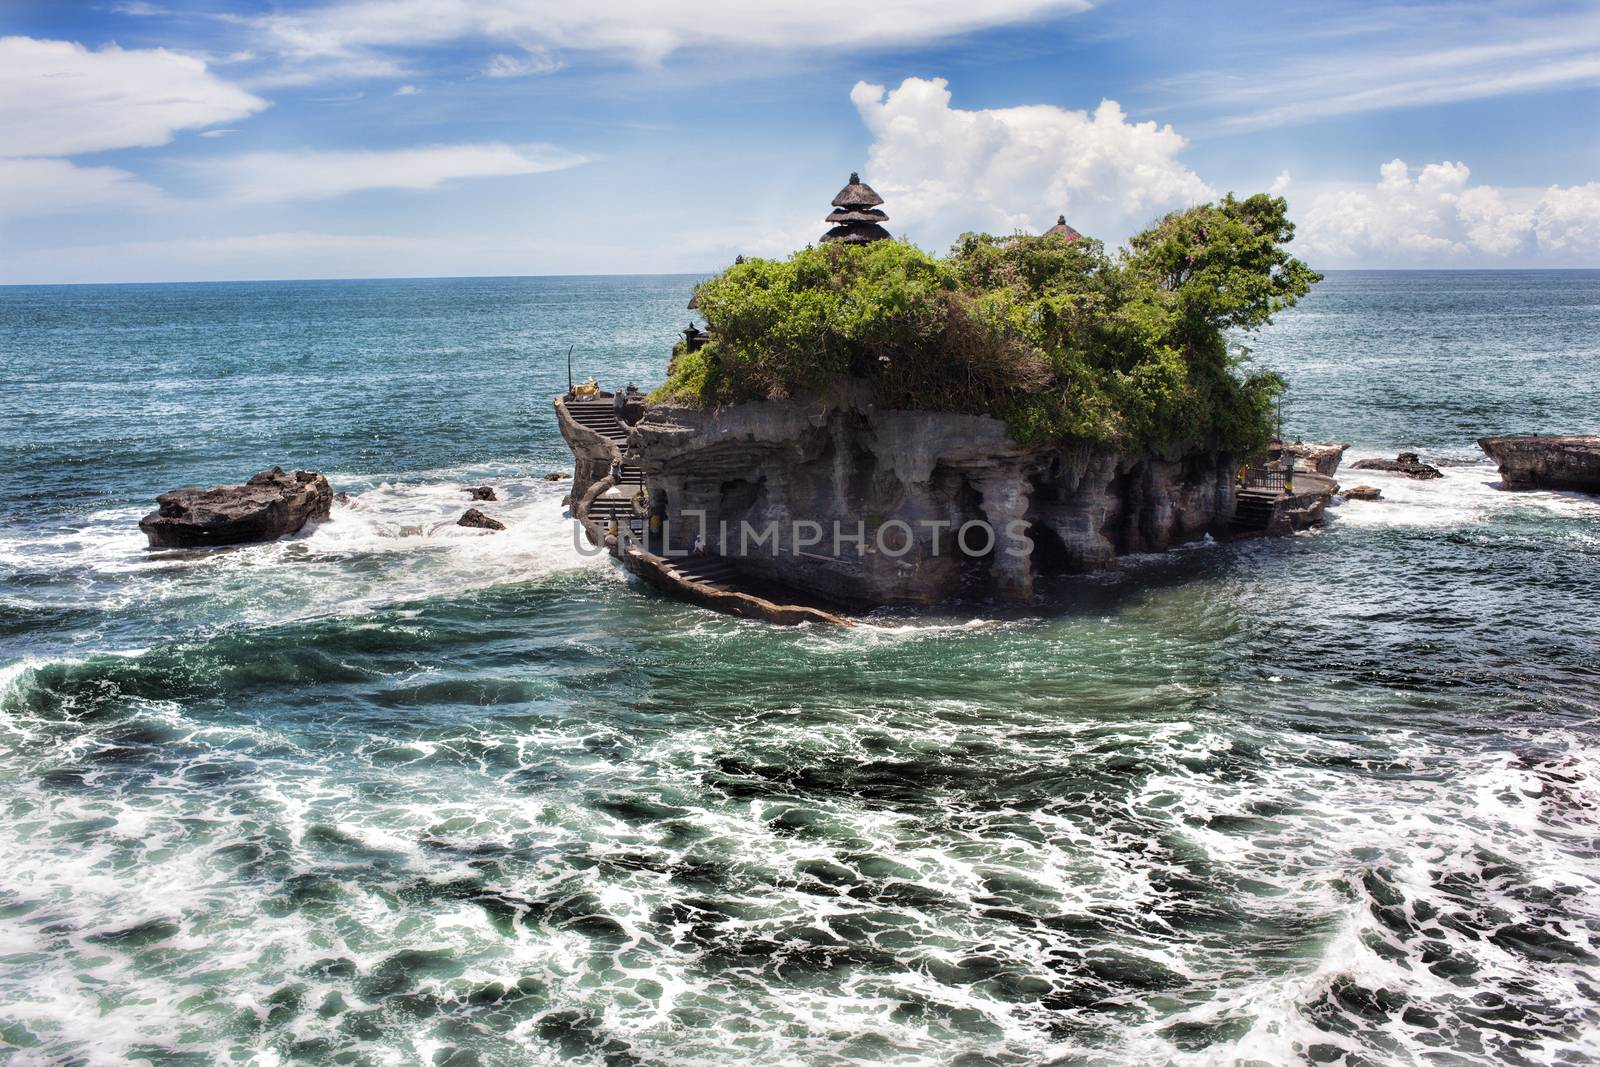 tanalot temple in eastern Bali by fotoru